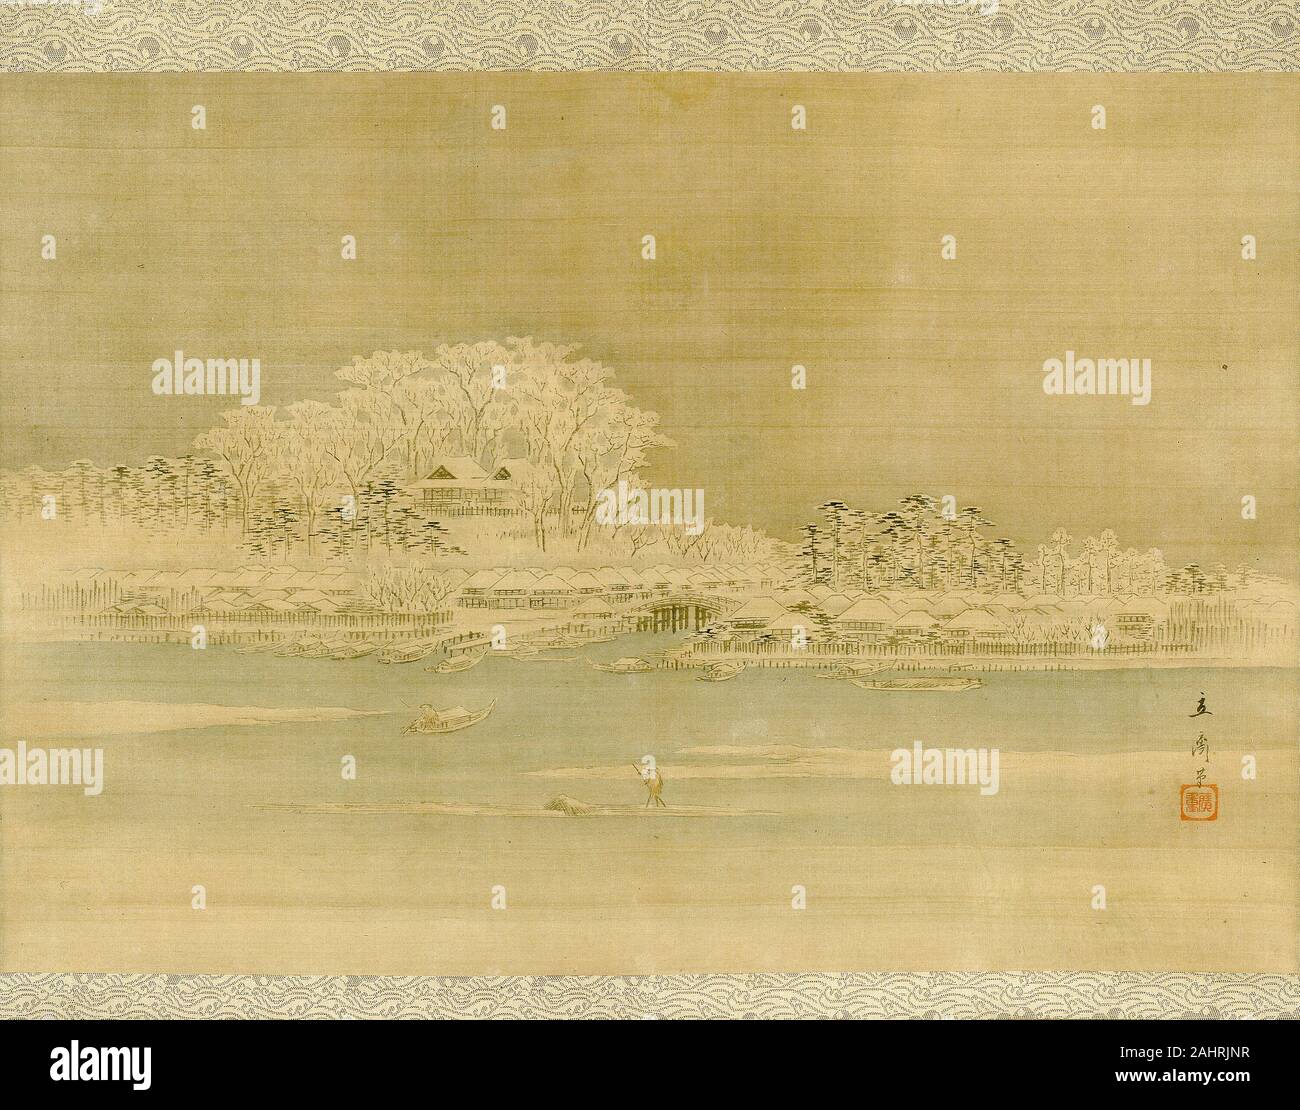 Utagawa Hiroshige. Matsuchiyama sur la rivière Sumida. 1833-1866. Le Japon. Défilement pendaison ; l'encre et couleur sur soie Banque D'Images